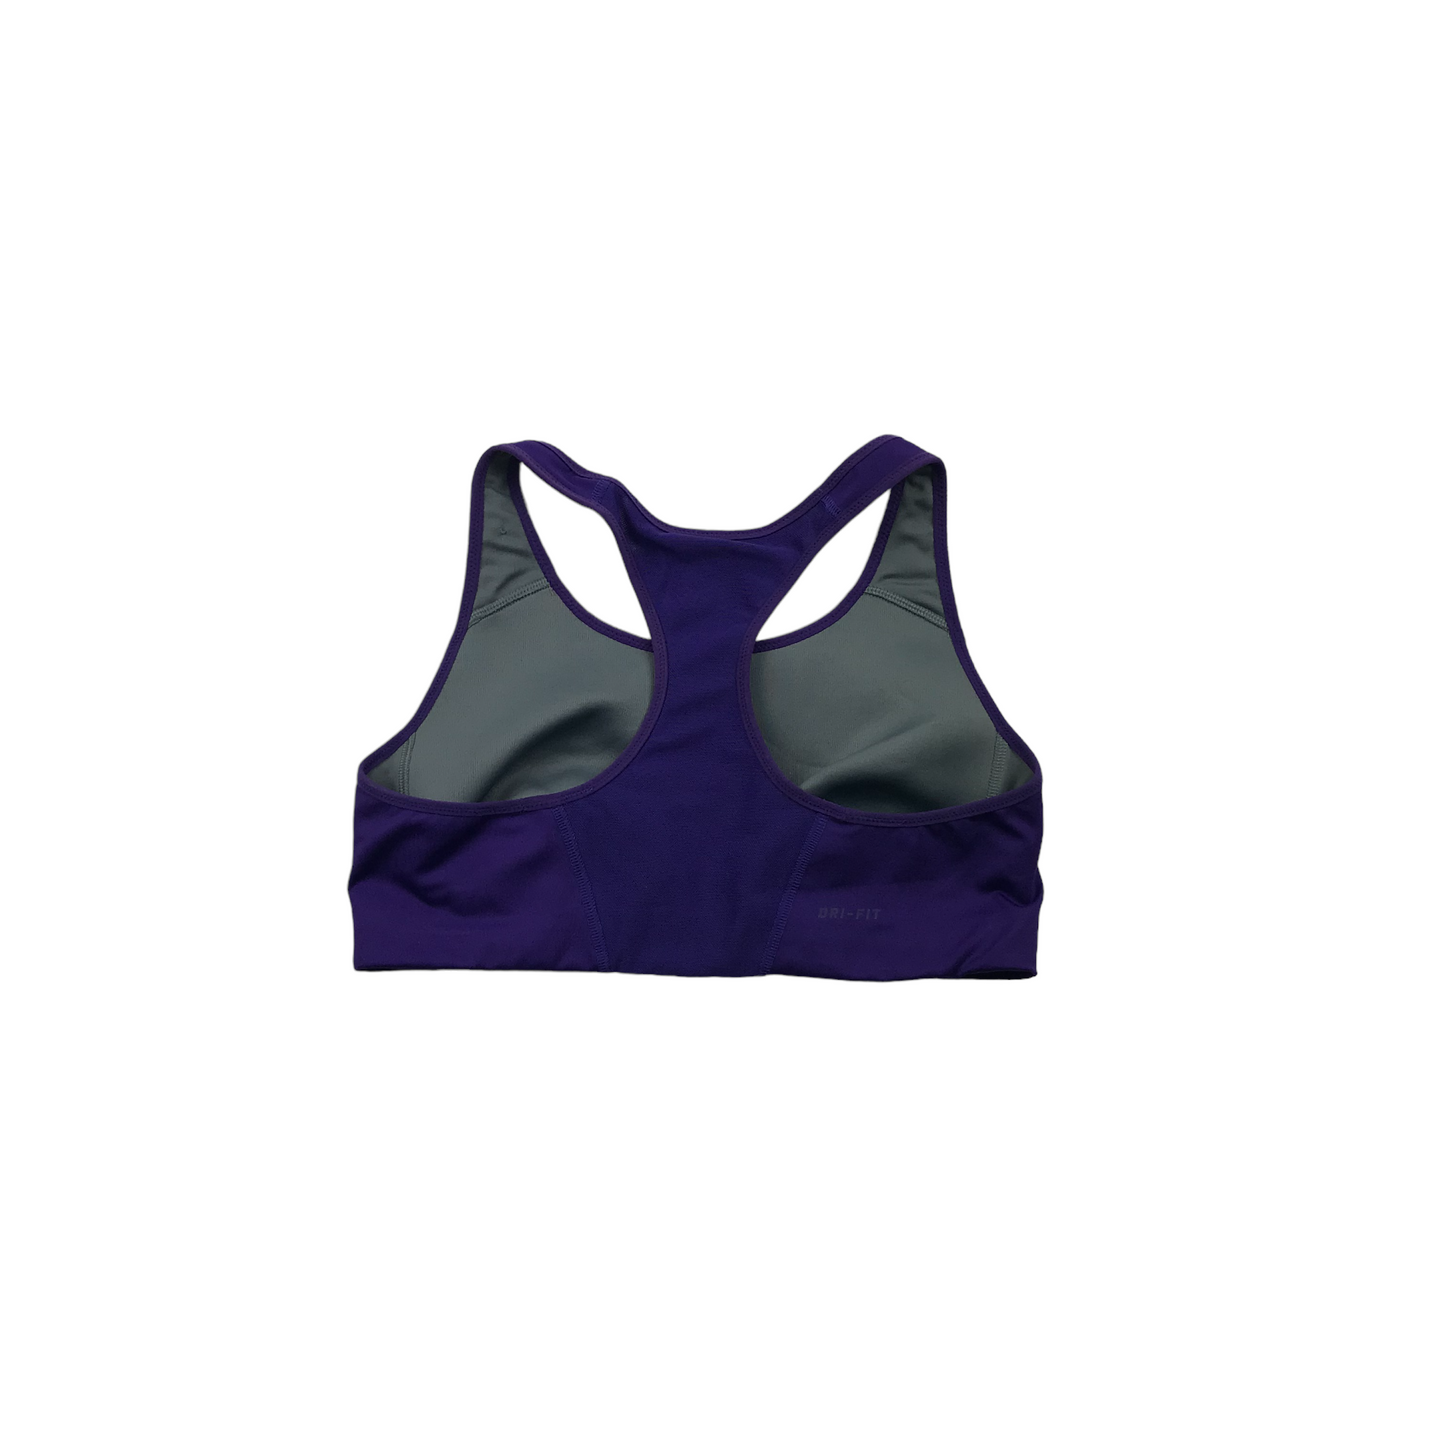 Nike Purple Sports Crop Top Women's Size M